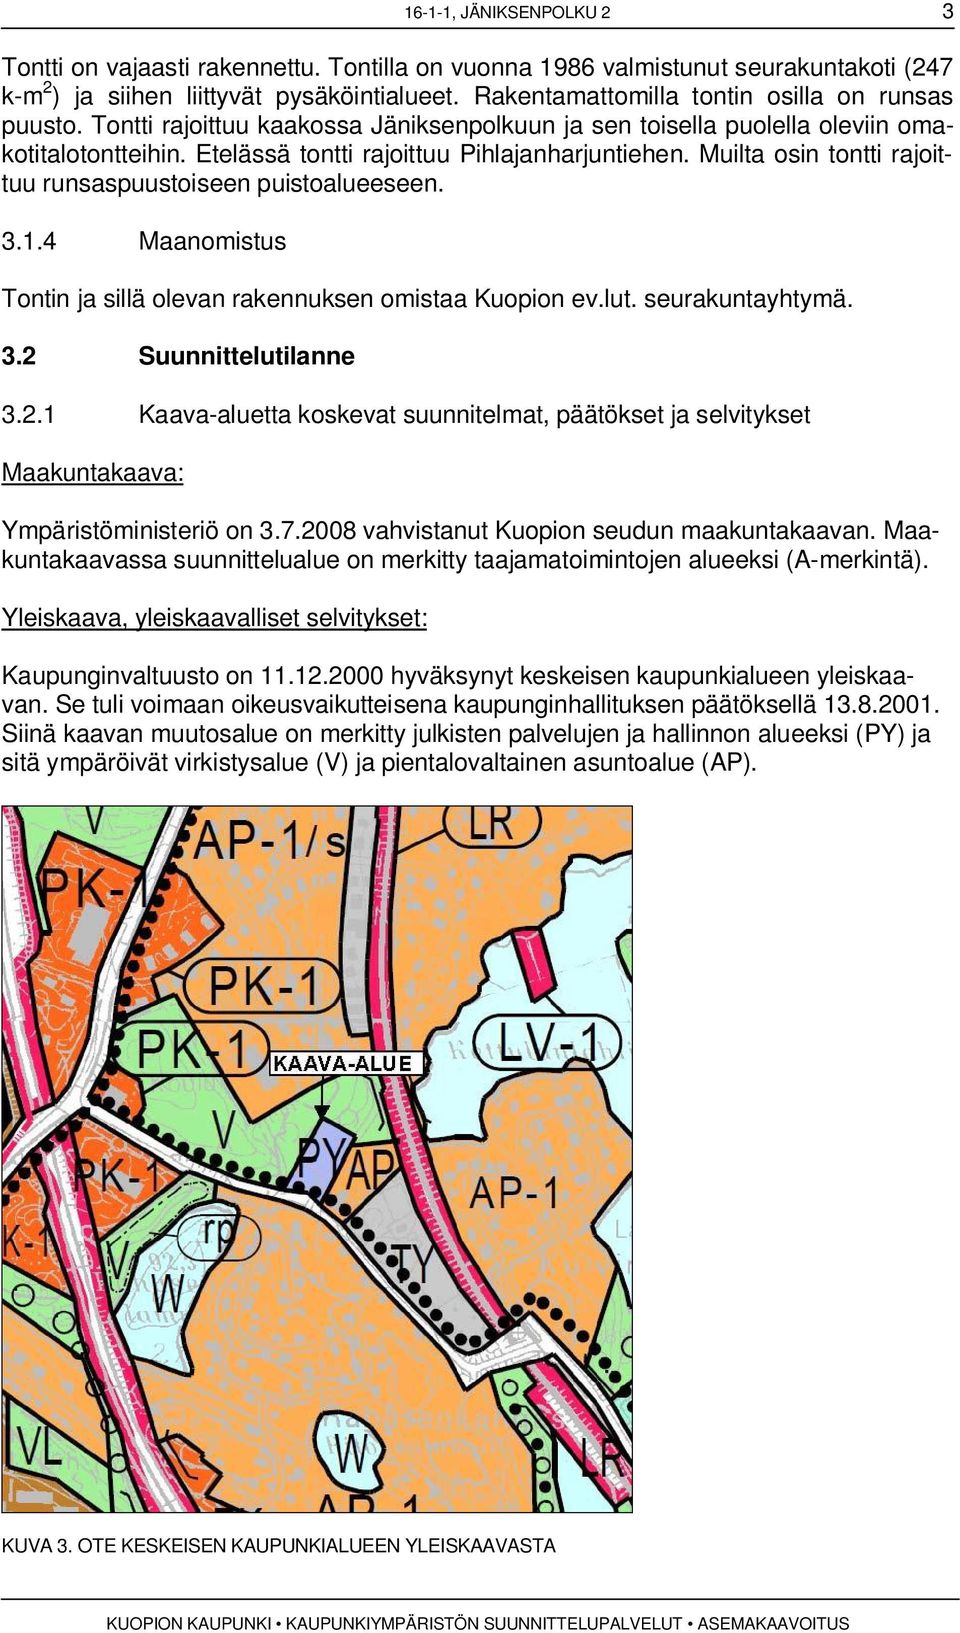 Muilta osin tontti rajoittuu runsaspuustoiseen puistoalueeseen. 3.1.4 Maanomistus Tontin ja sillä olevan rakennuksen omistaa Kuopion ev.lut. seurakuntayhtymä. 3.2 